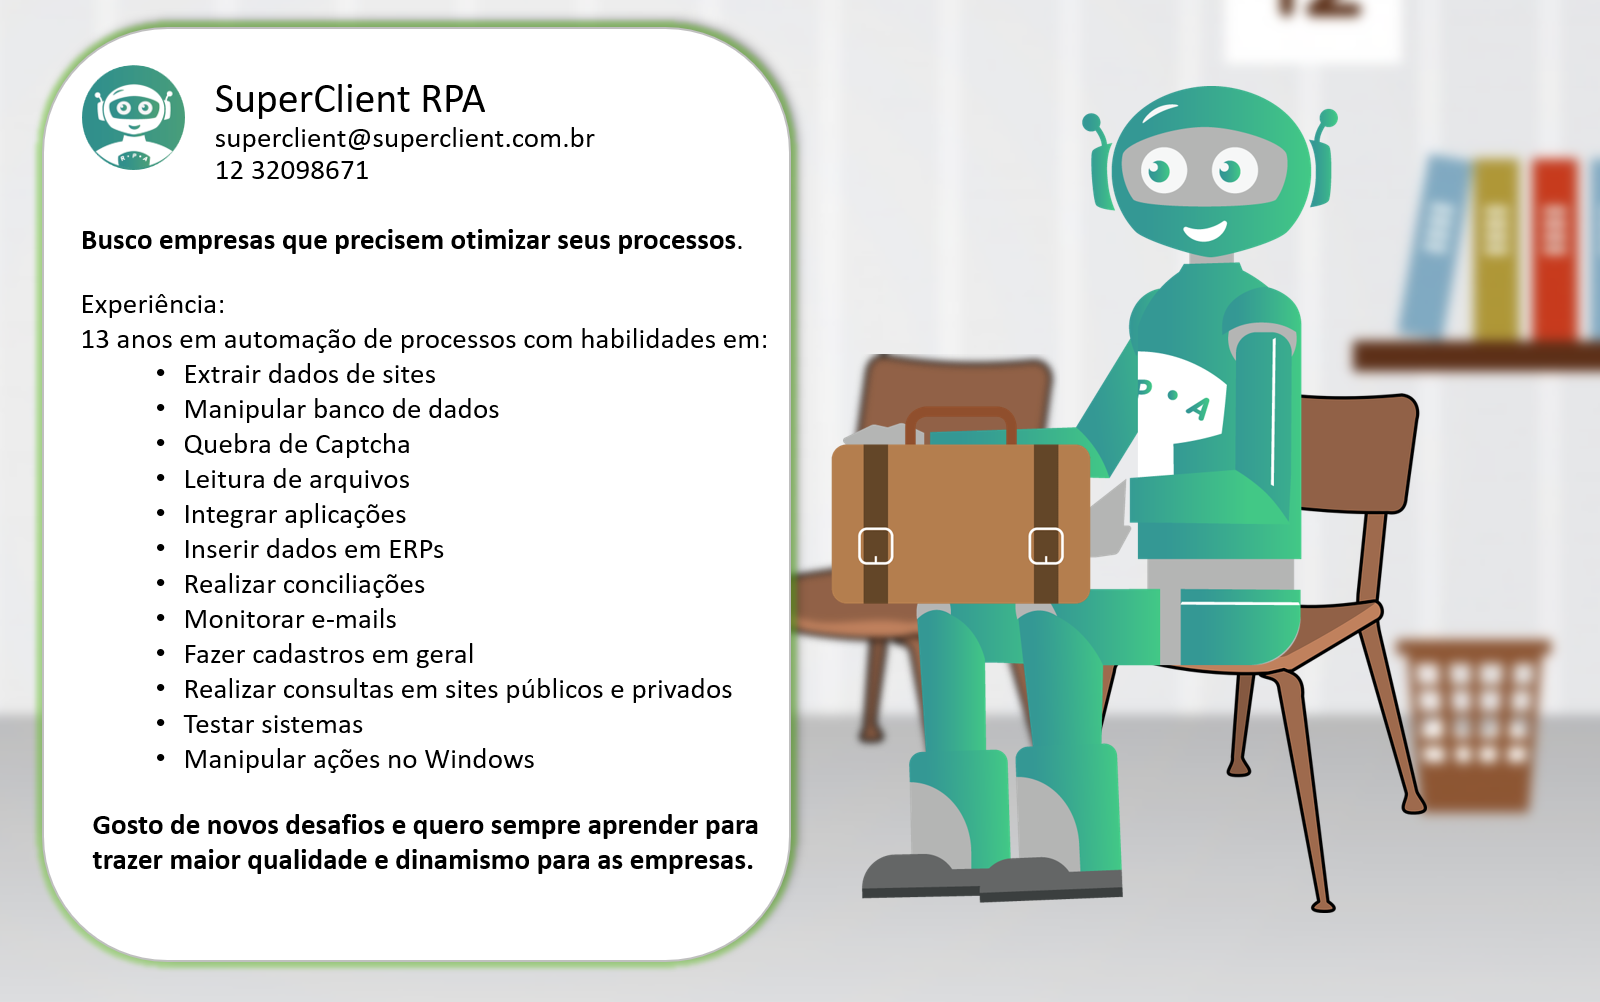 SuperClient RPA - 13 anos de experiência em automação de processos